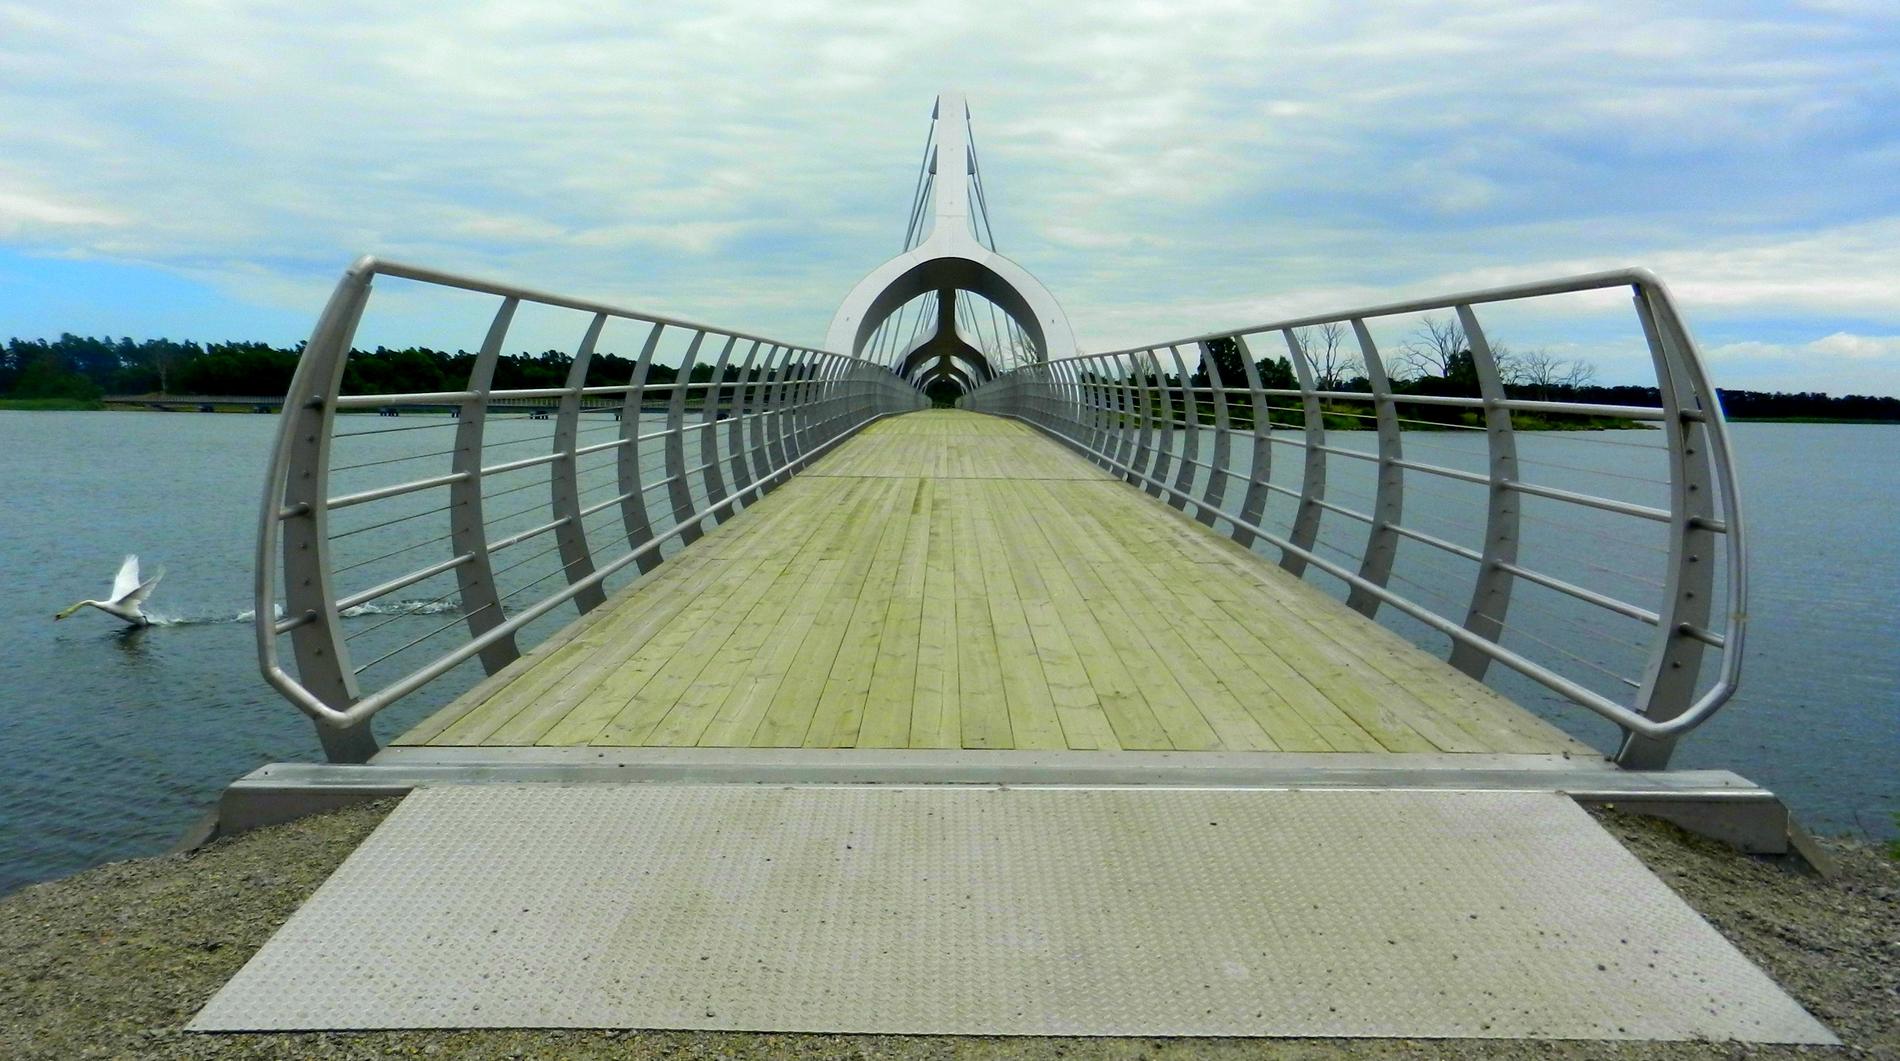 Sölvesborg i Blekinge har fått en ny bro som är 756 meter lång. Fotografen skriver: "Jag Skulle ta ett fint kort på bron. Efter en stunds koncentration och sett till att det var helt folktomt på bron så kom en svan och Fotobombade min bild just när jag skulle fotografera hi hi hi."